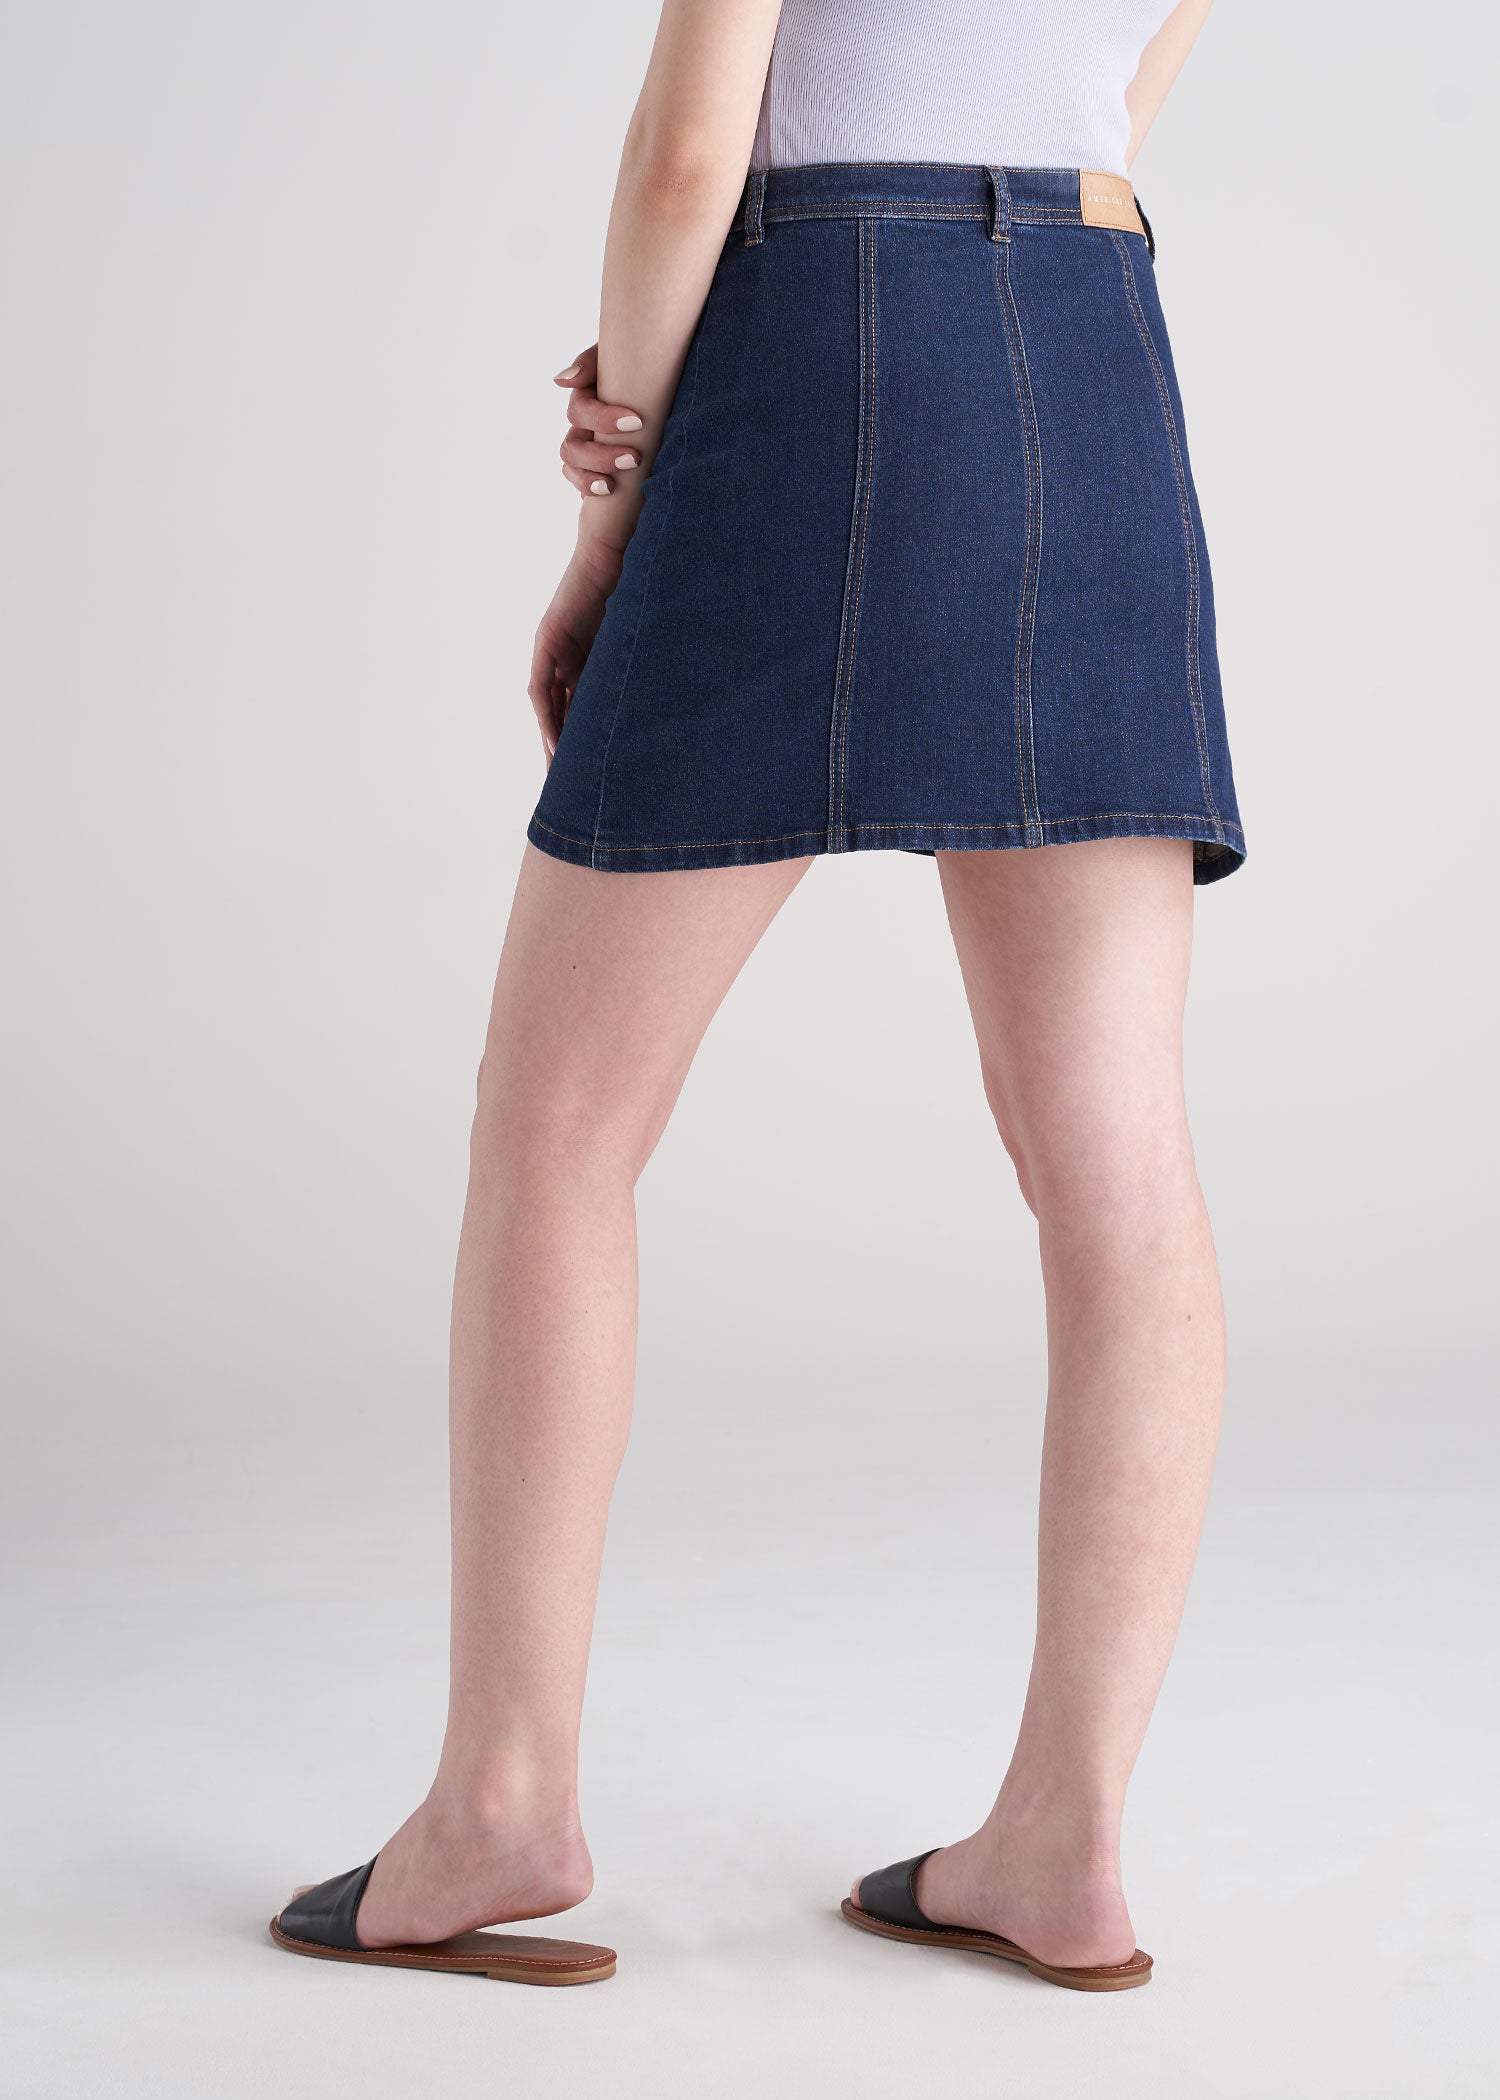 Button-Up Women's Tall Denim Skirt